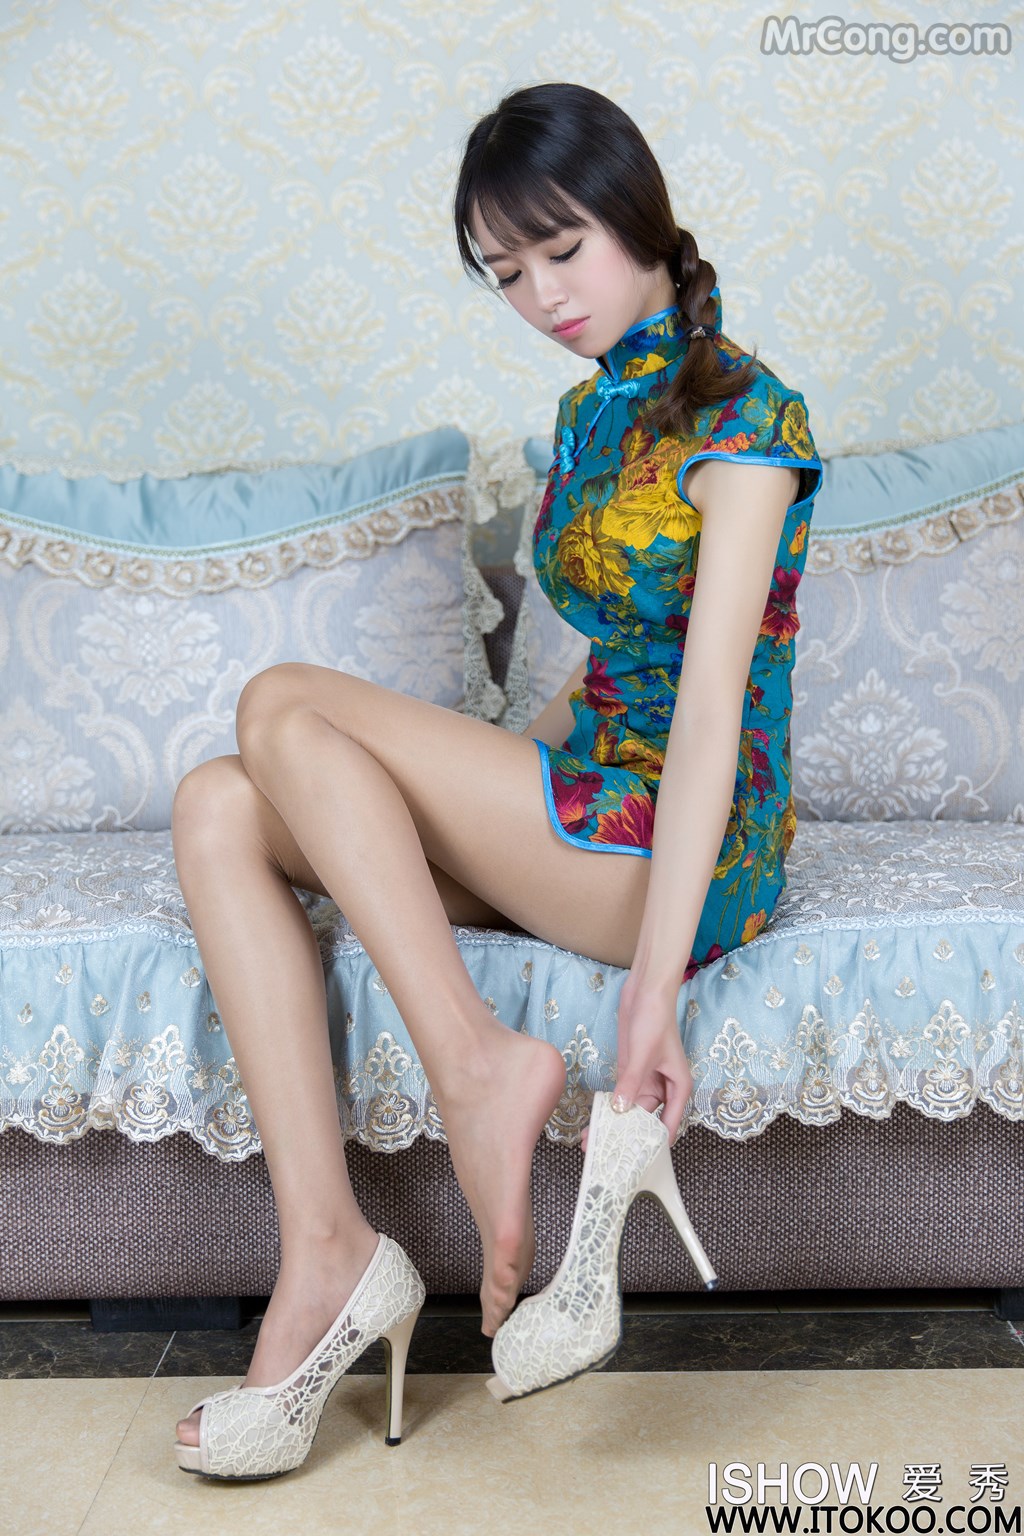 ISHOW No.087: Adela model (馨 雅) (37 photos)